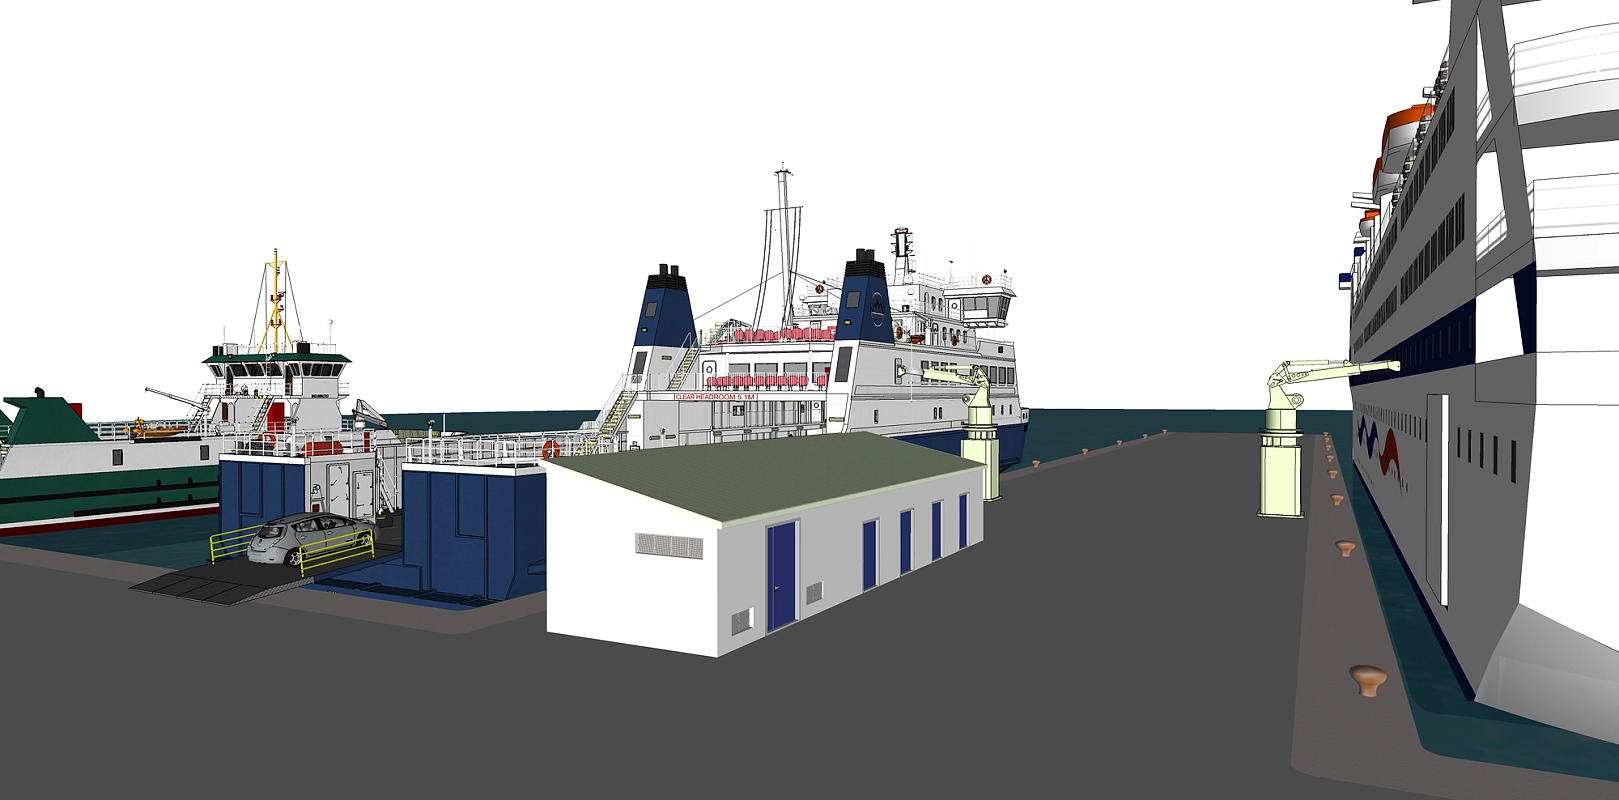 Bilde viser en 3D-tegning fra et havneområde som viser lading av større lastebåter og ferjer.